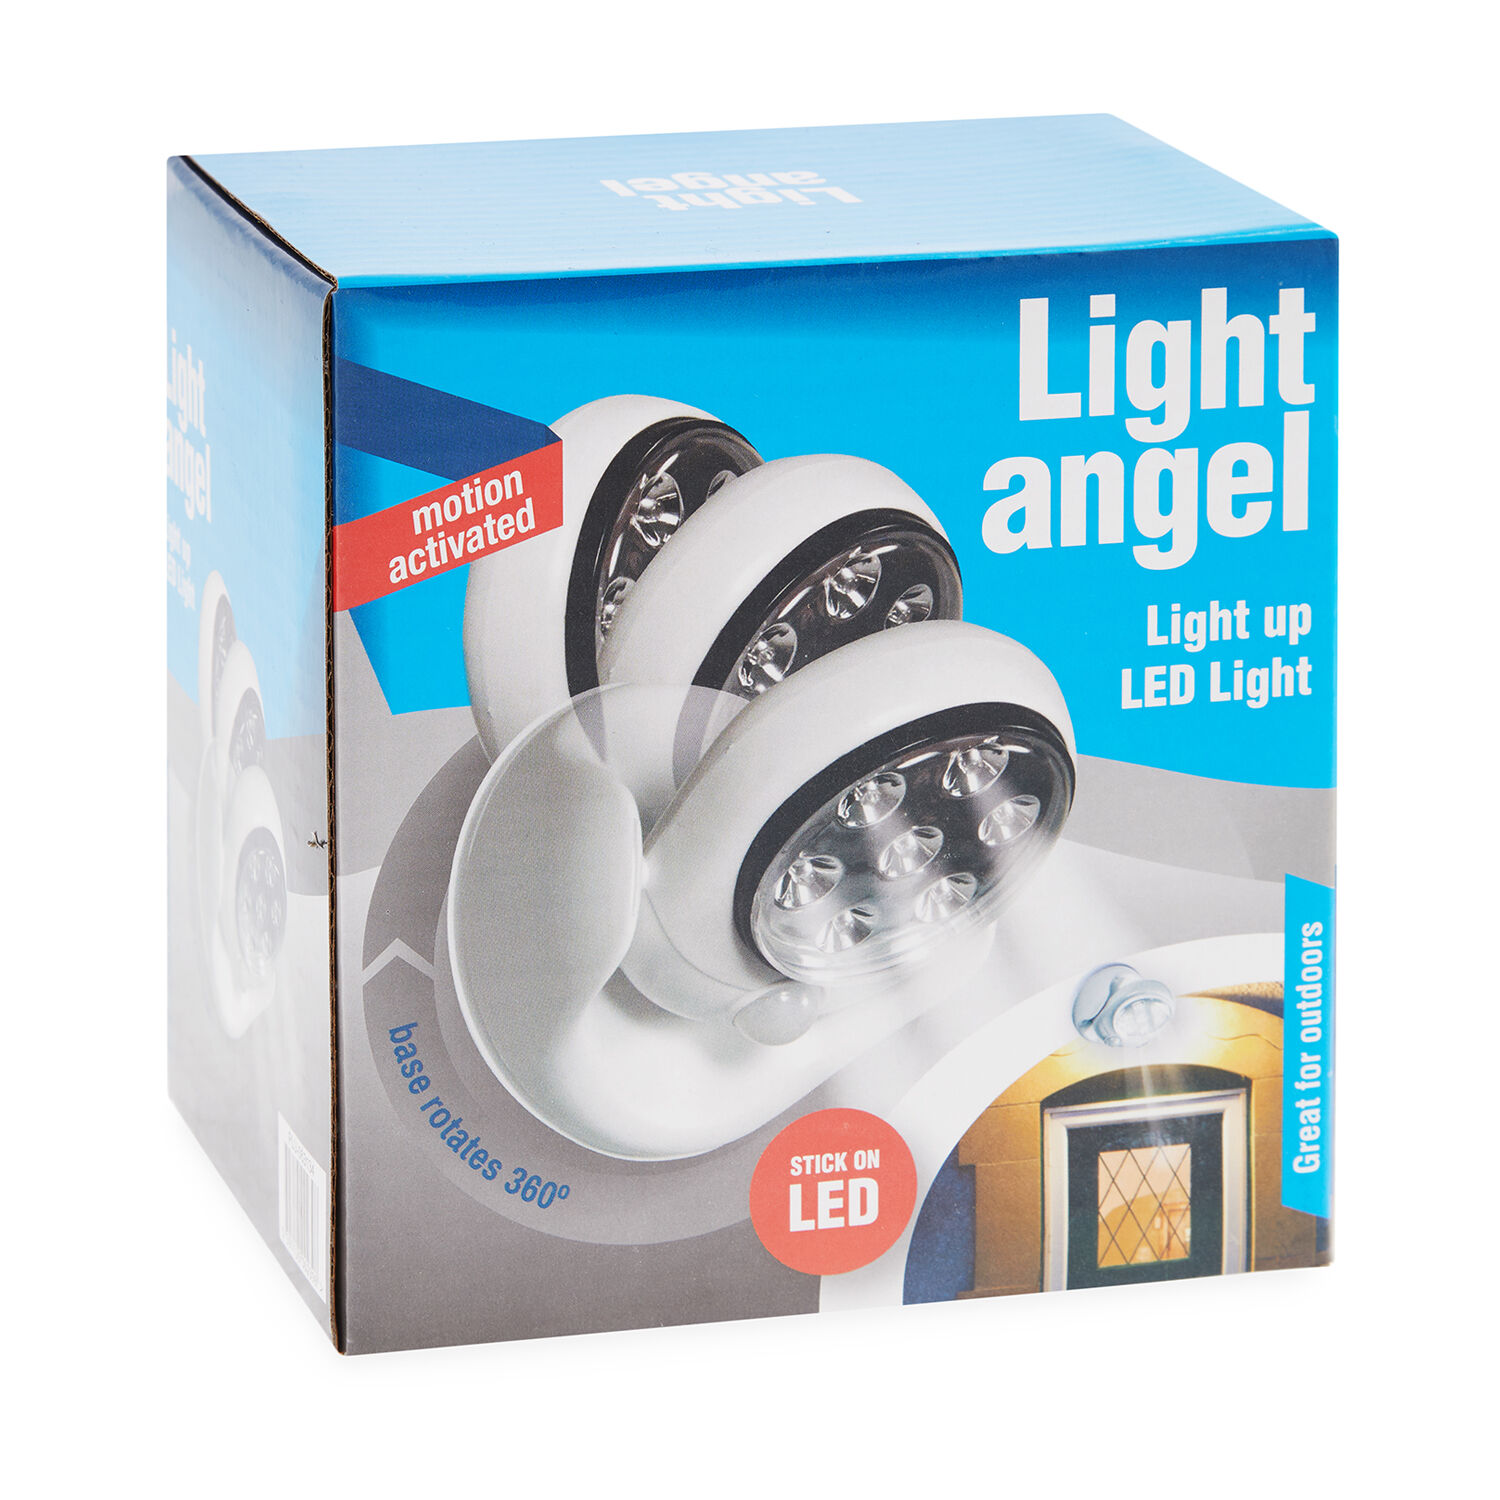 https://www.homestoreandmore.co.uk/dw/image/v2/BCBN_PRD/on/demandware.static/-/Sites-master/default/dwf711f6e1/images/Motion-Activated-LED-Security-Light-Angel-LED-Lights-063134-hi-res-2.jpg?sw=1500